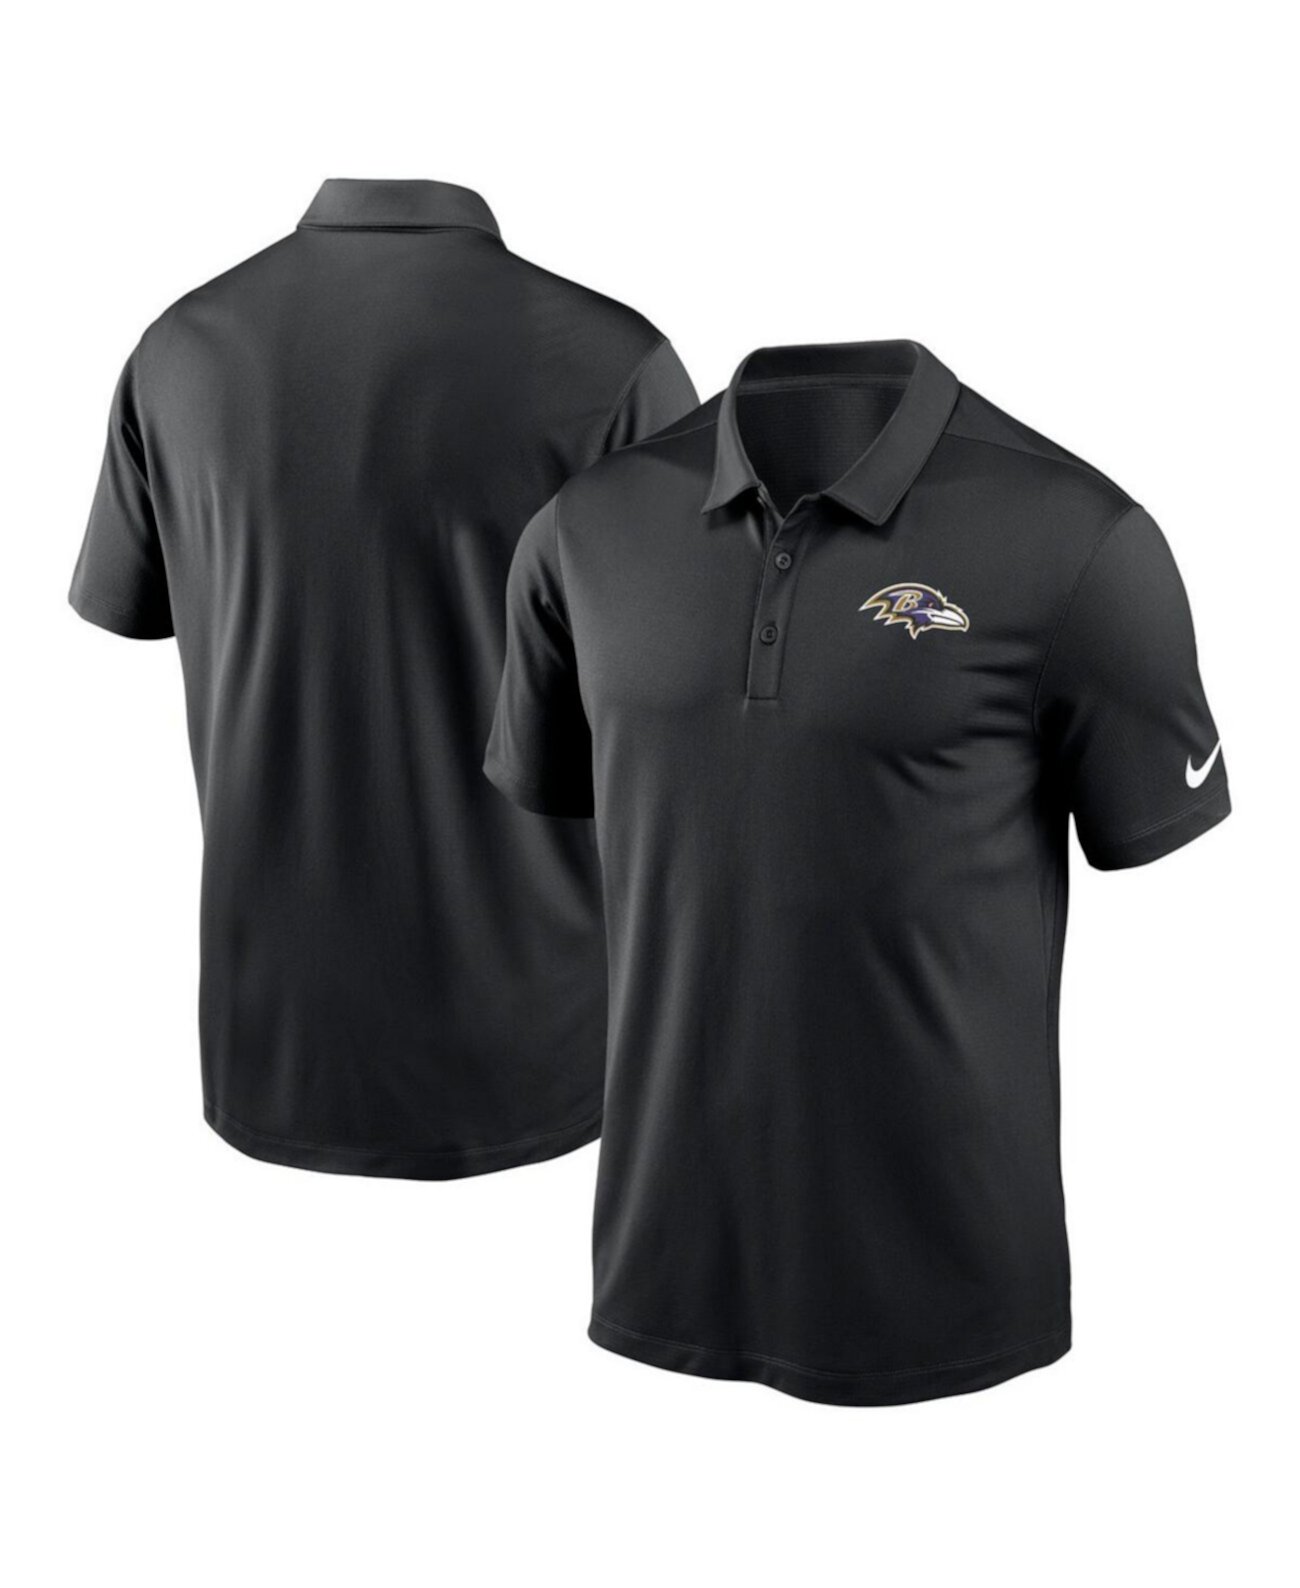 Мужская черная рубашка-поло с логотипом команды Baltimore Ravens Franchise Team Nike